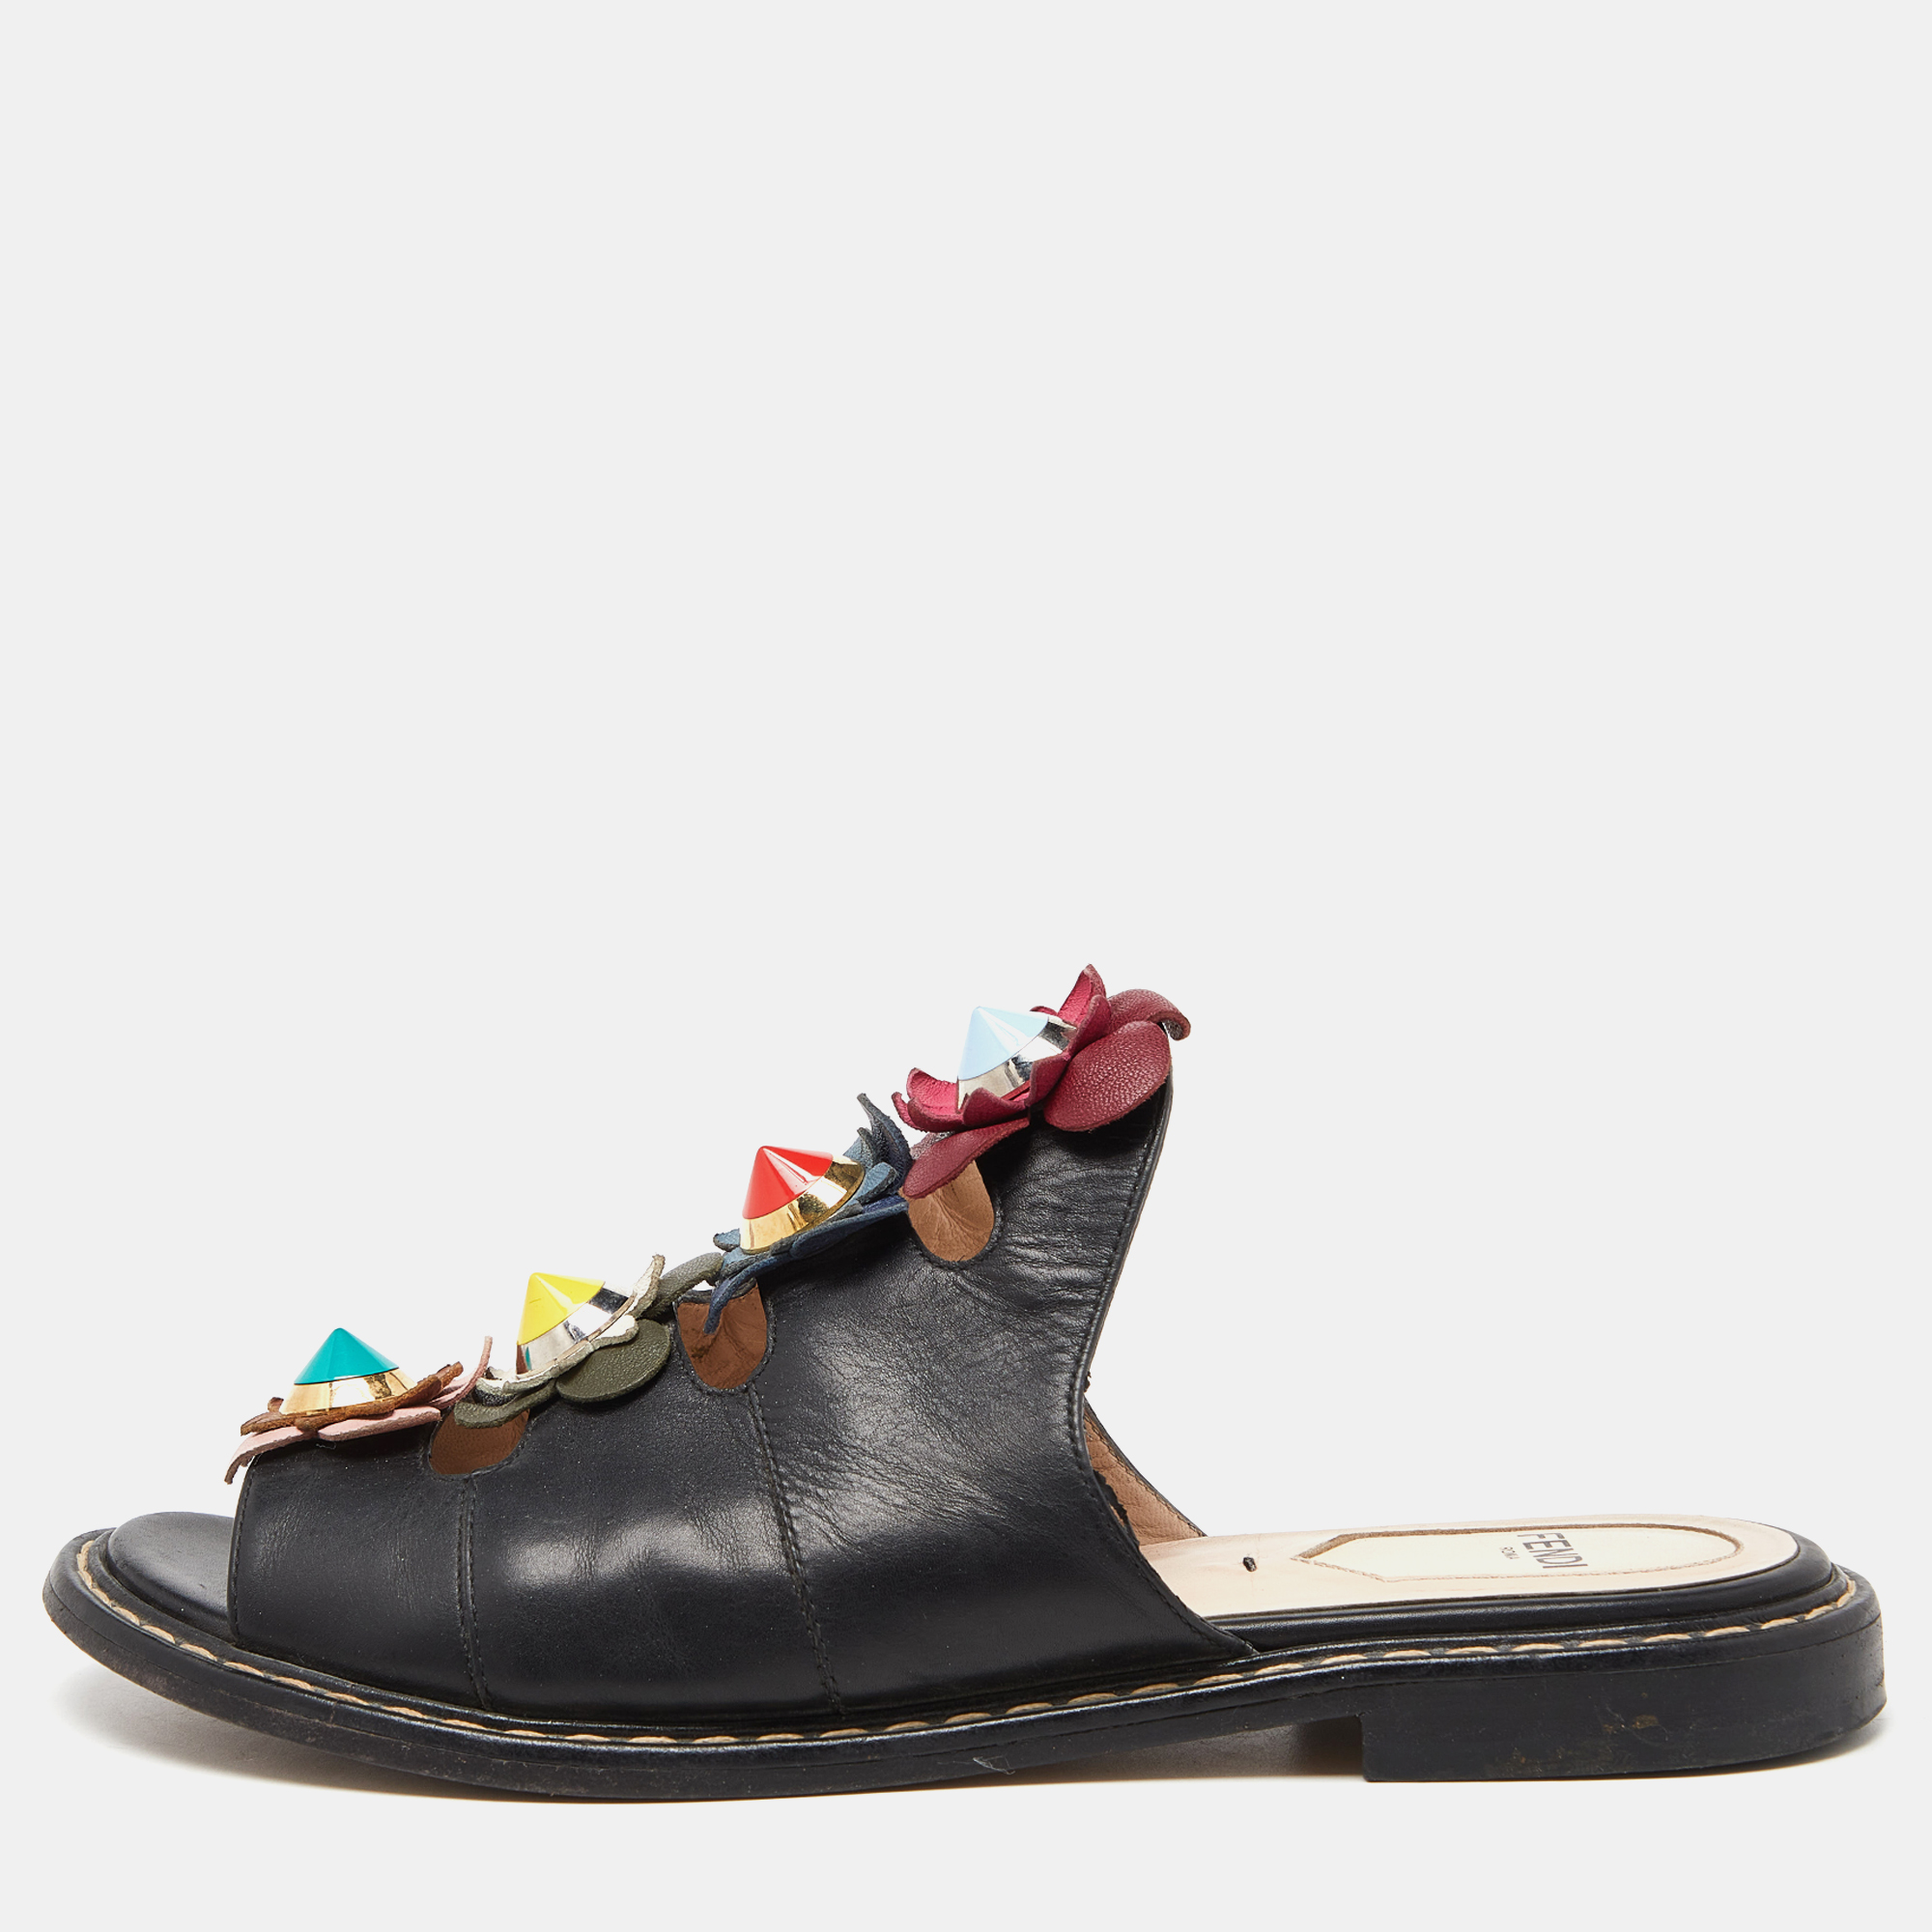 Pre-owned Fendi Black Leather Flowerland Slide Sandals Size 36